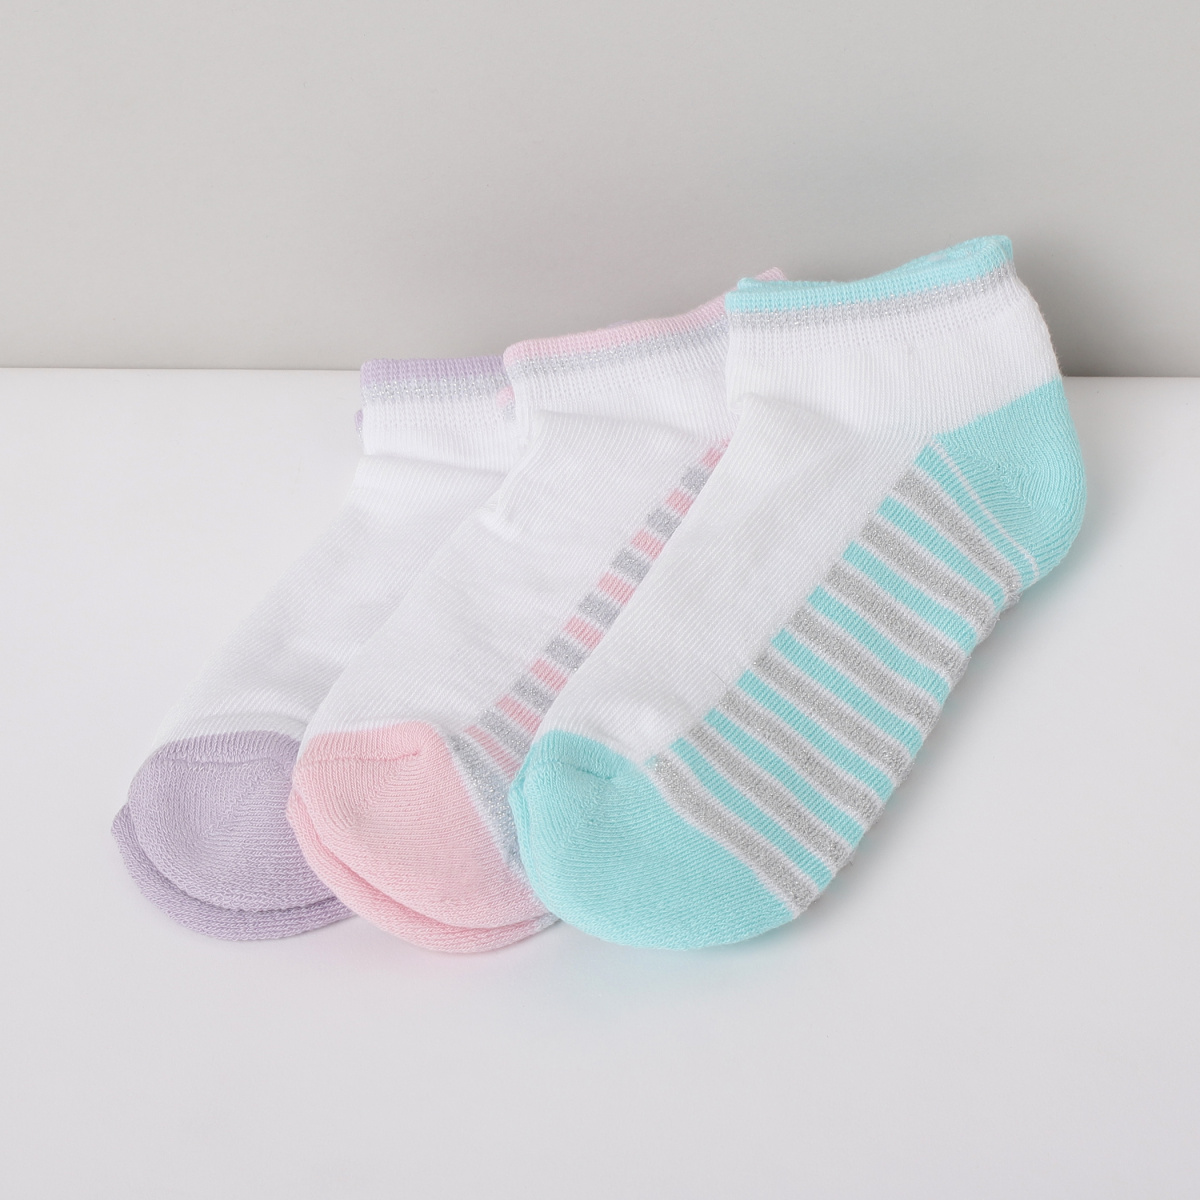 MAX Striped Socks - Set of 3